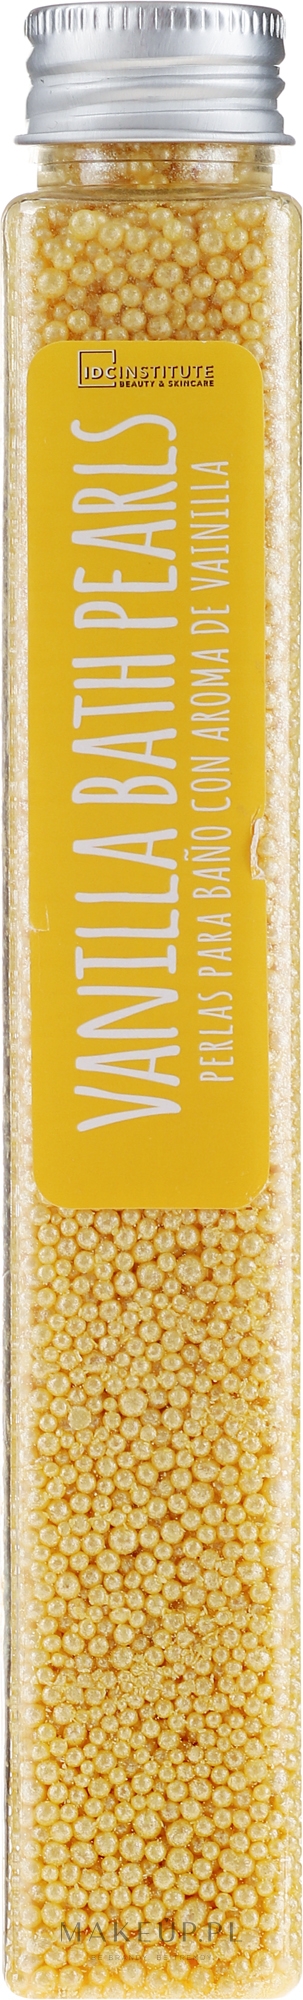 Perełki do kąpieli Wanilia - IDC Institute Bath Pearls Vanilla — Zdjęcie 90 g